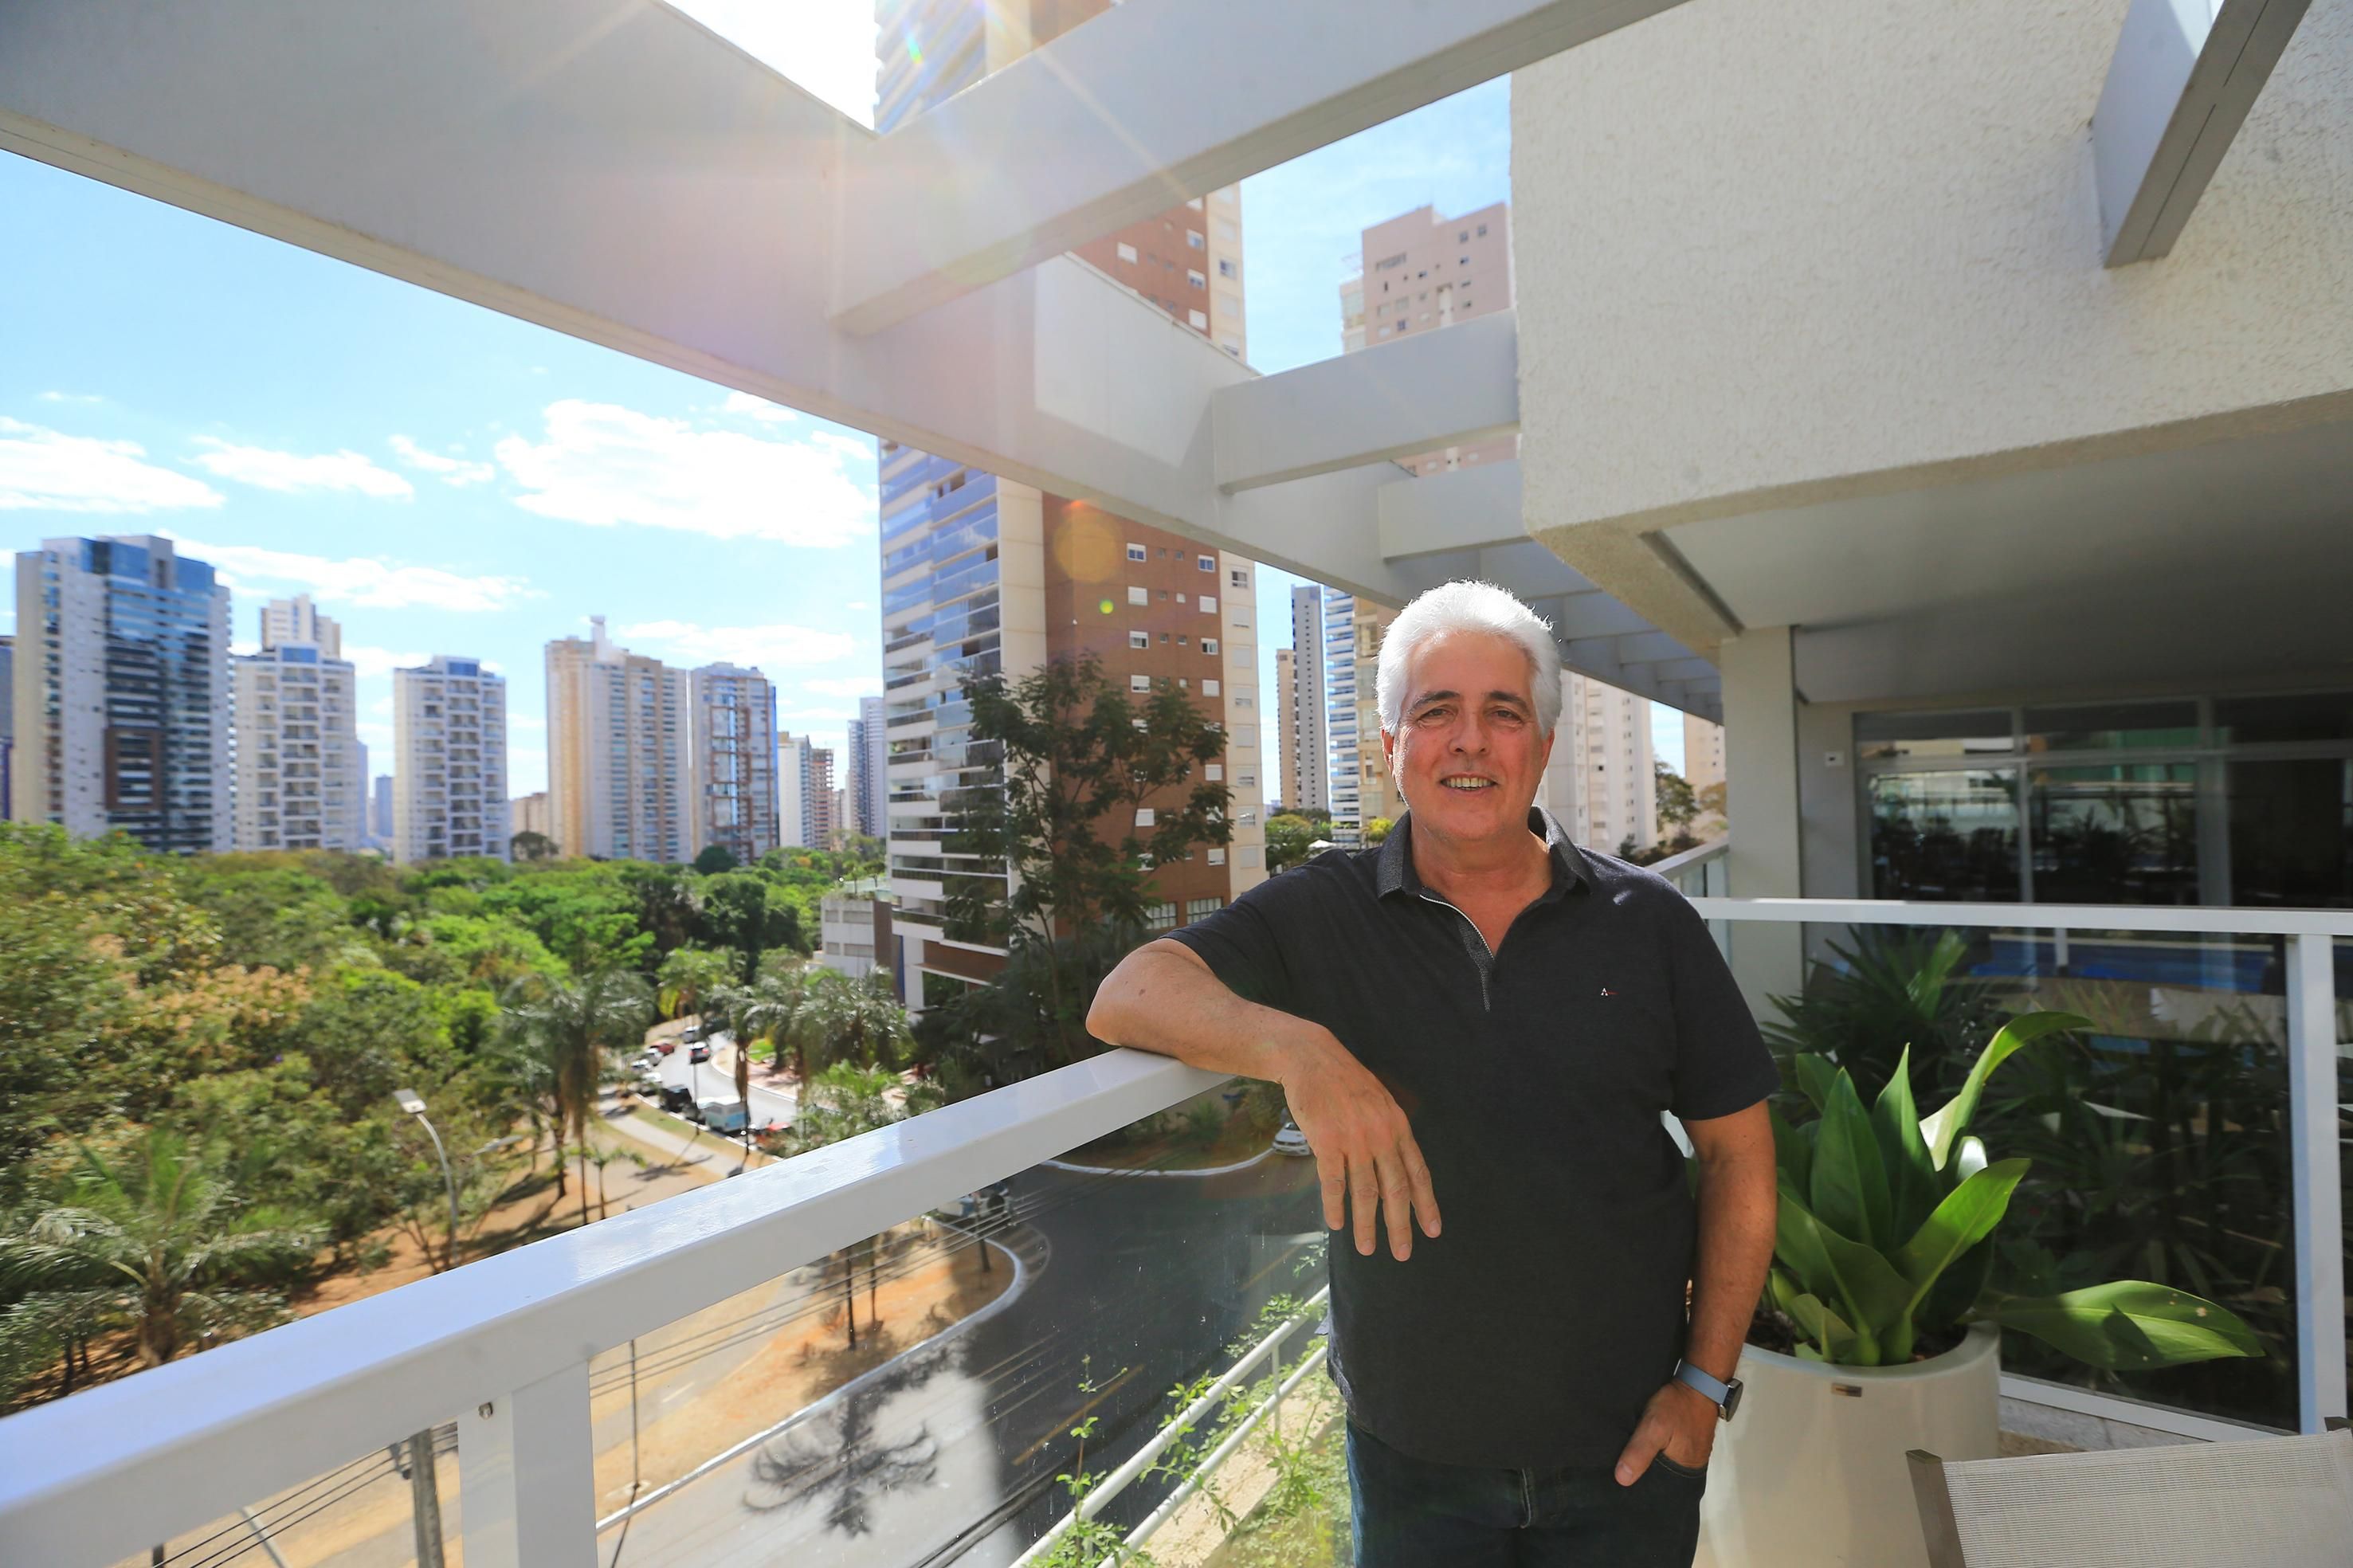 Locação de residencial com serviços hoteleiros ganha força no Brasil